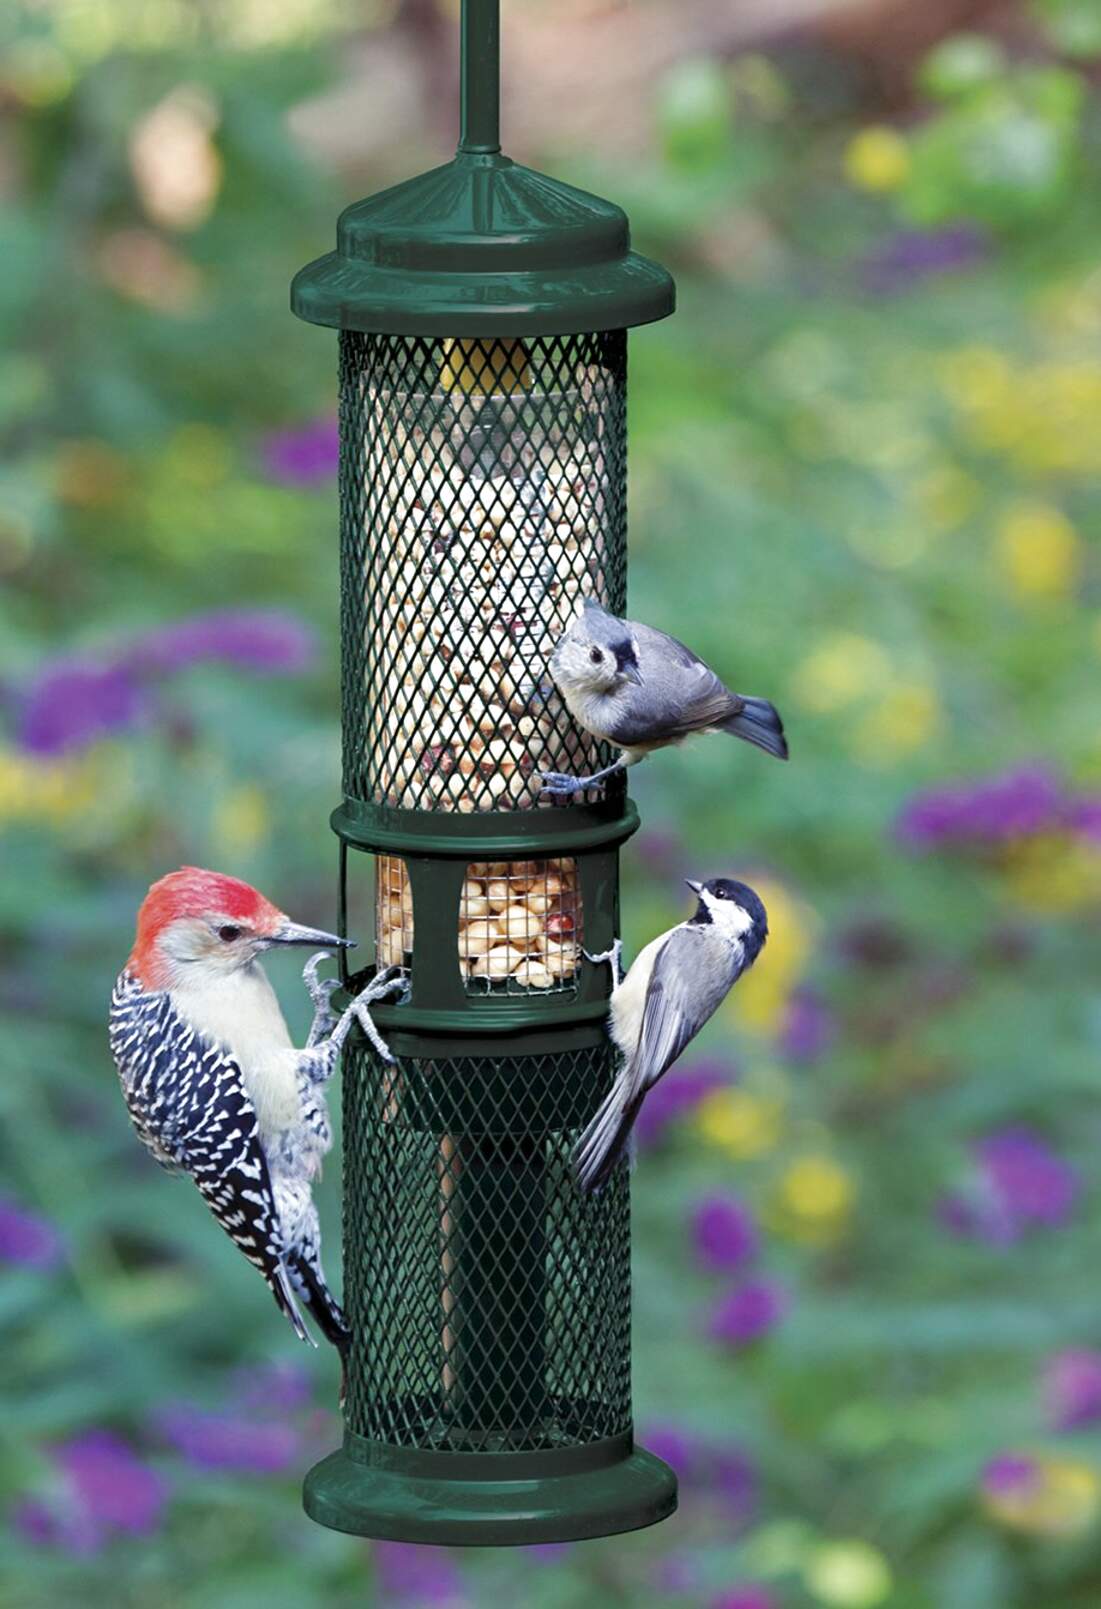 squirrel proof bird feeders